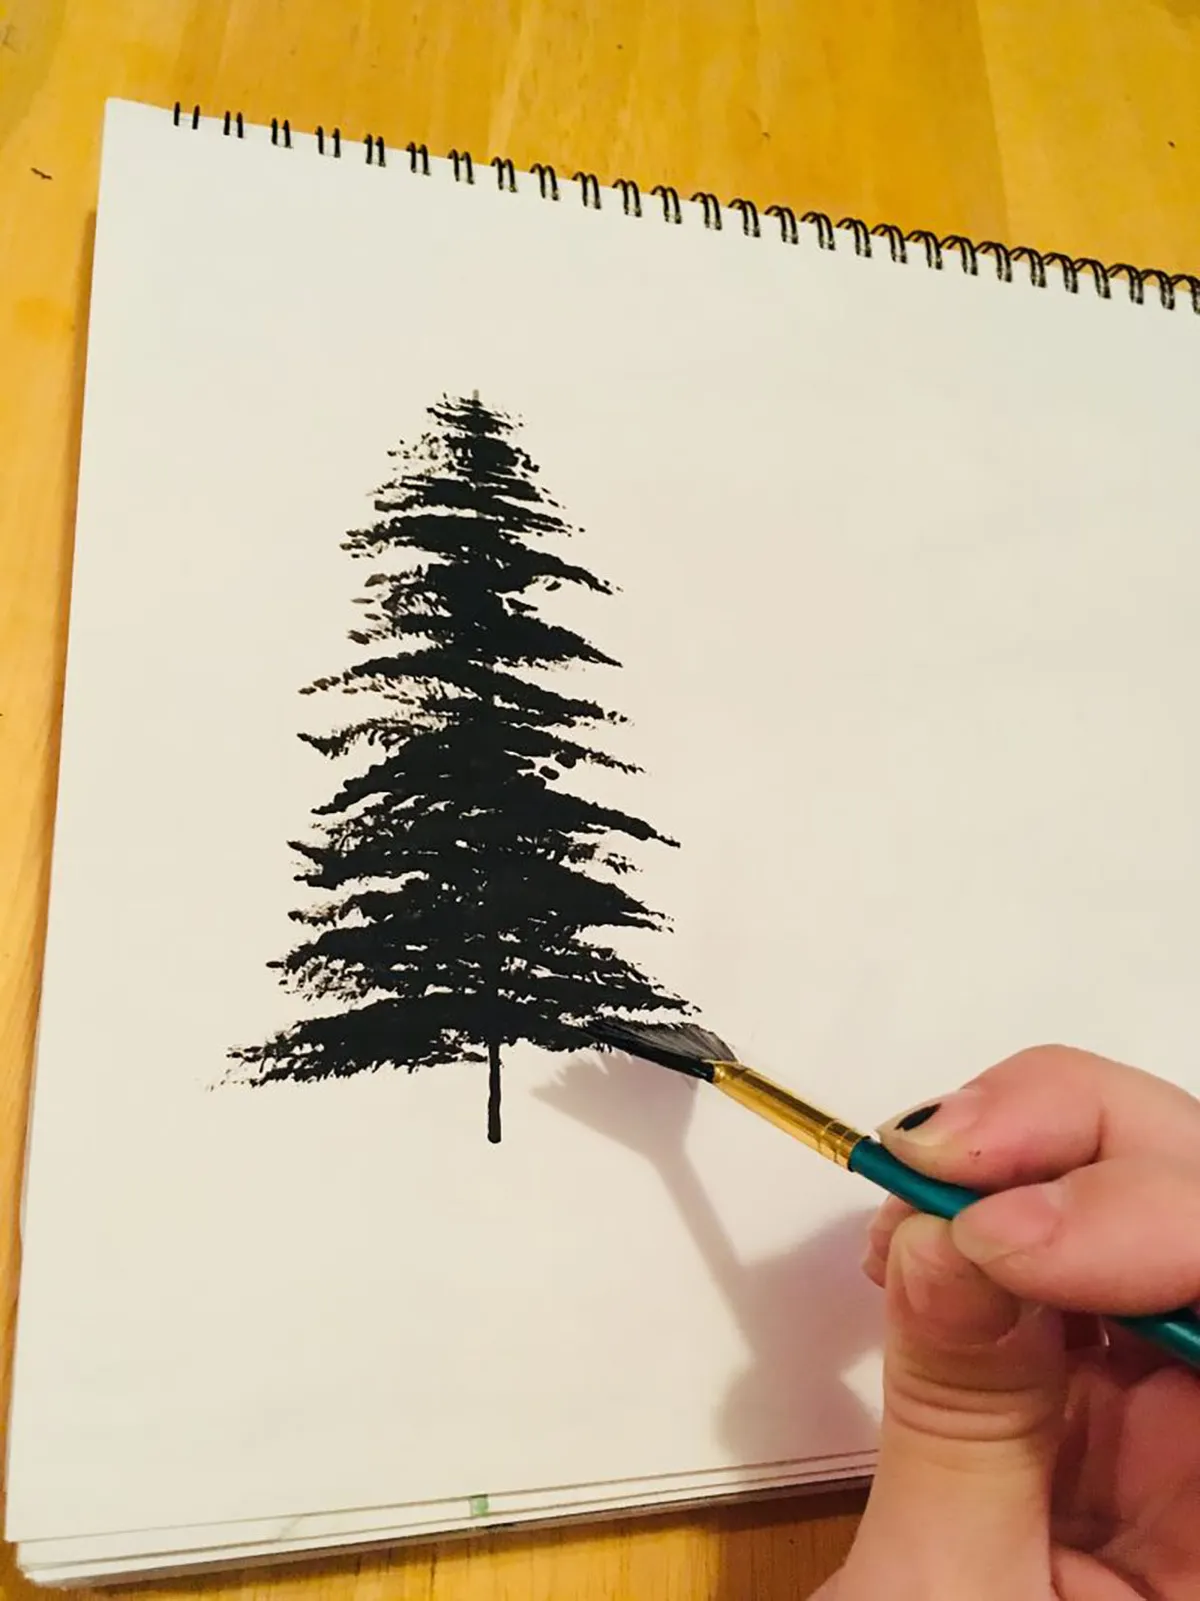 Easy acrylic painting ideas – fan brush tree